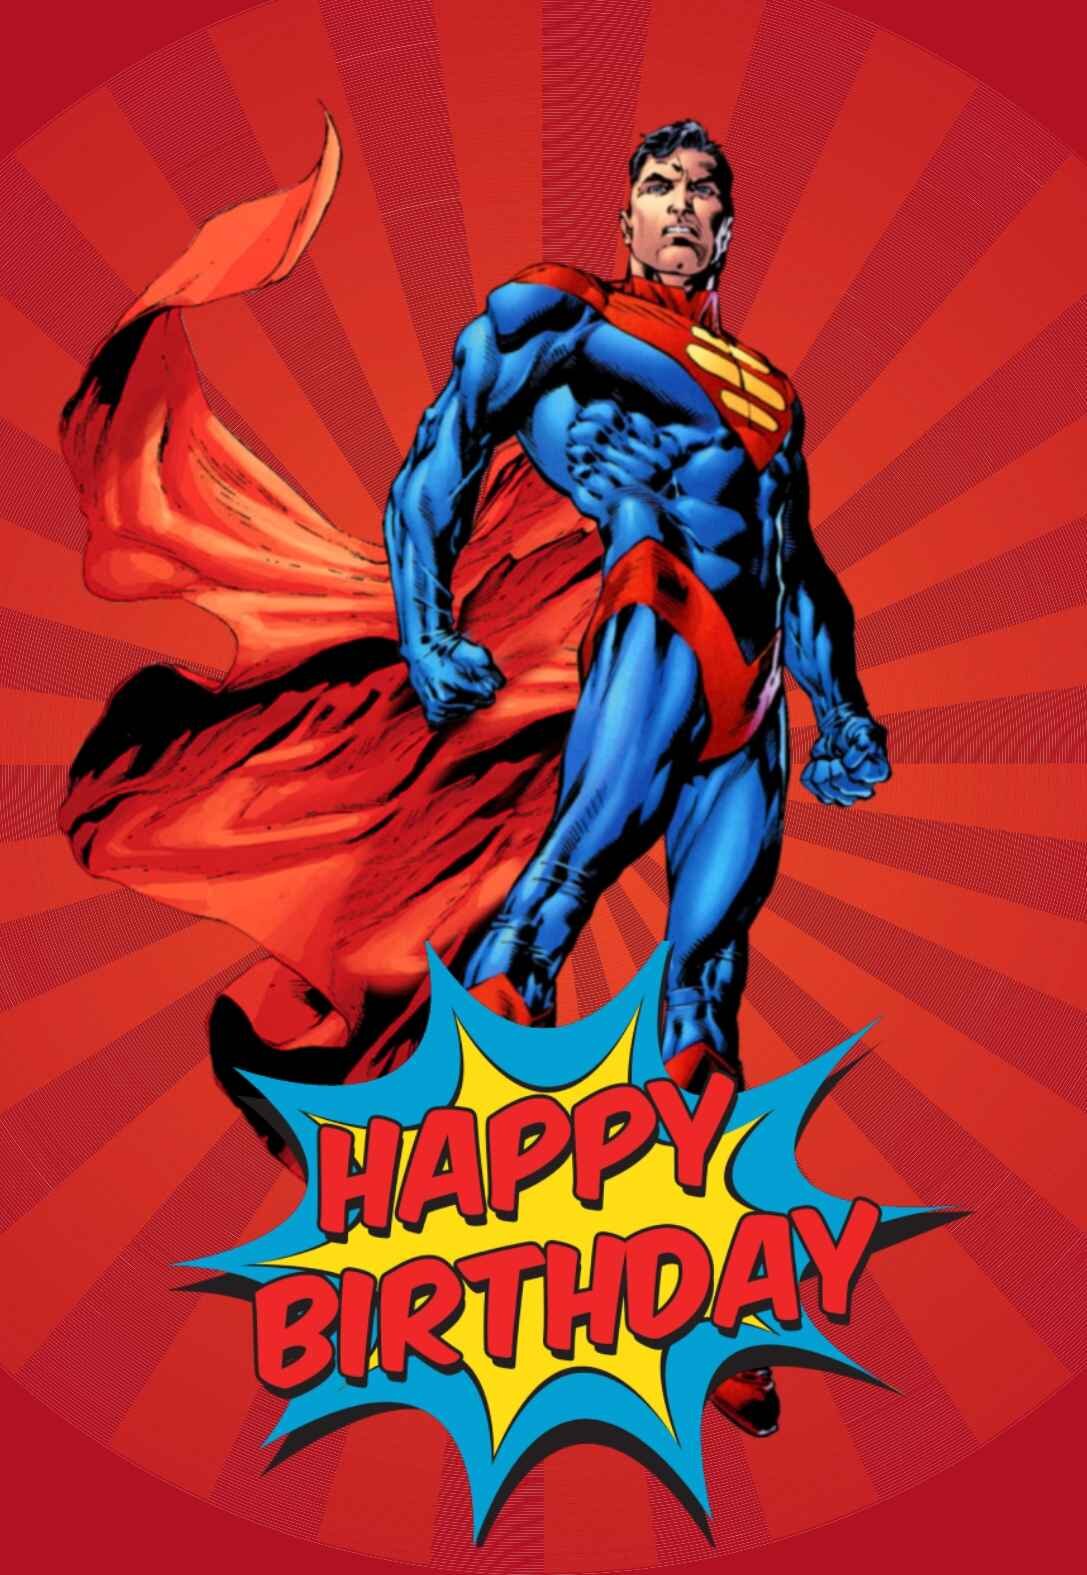 Printable Superhero Birthday Cards